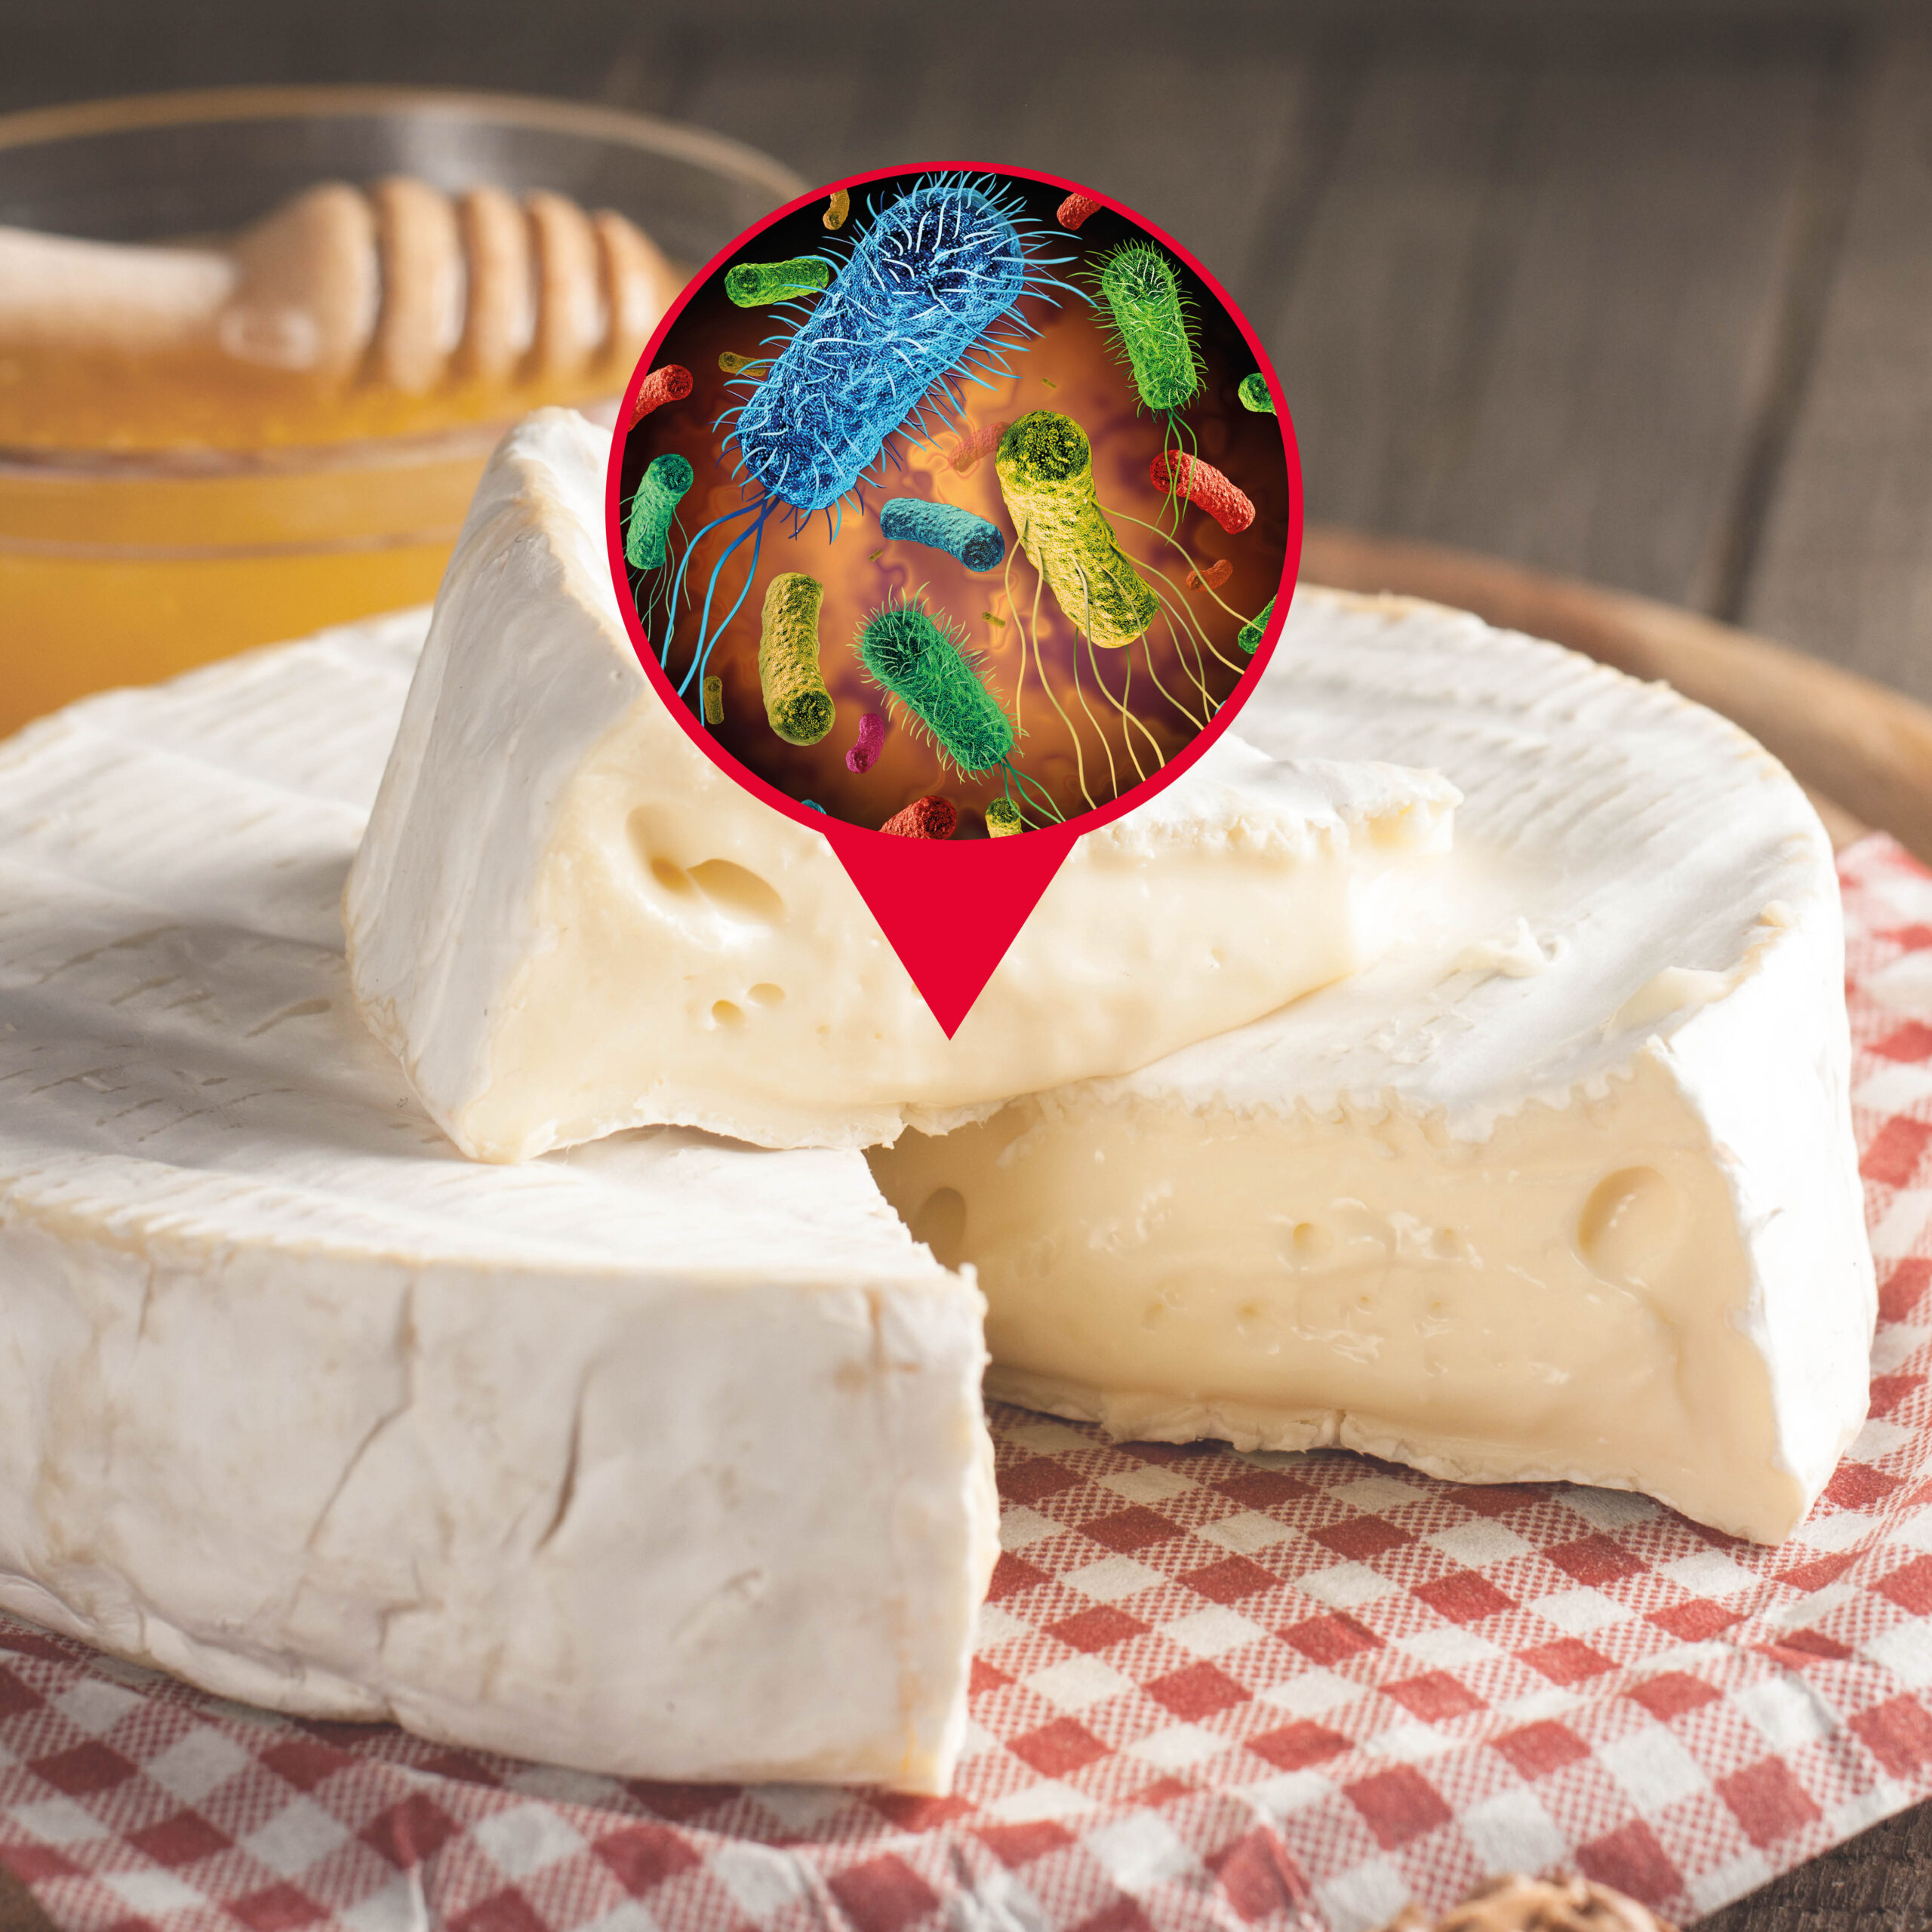 Nouvelle solution bioprotectrice pour contrôler Listeria monocytogenes dans le fromage